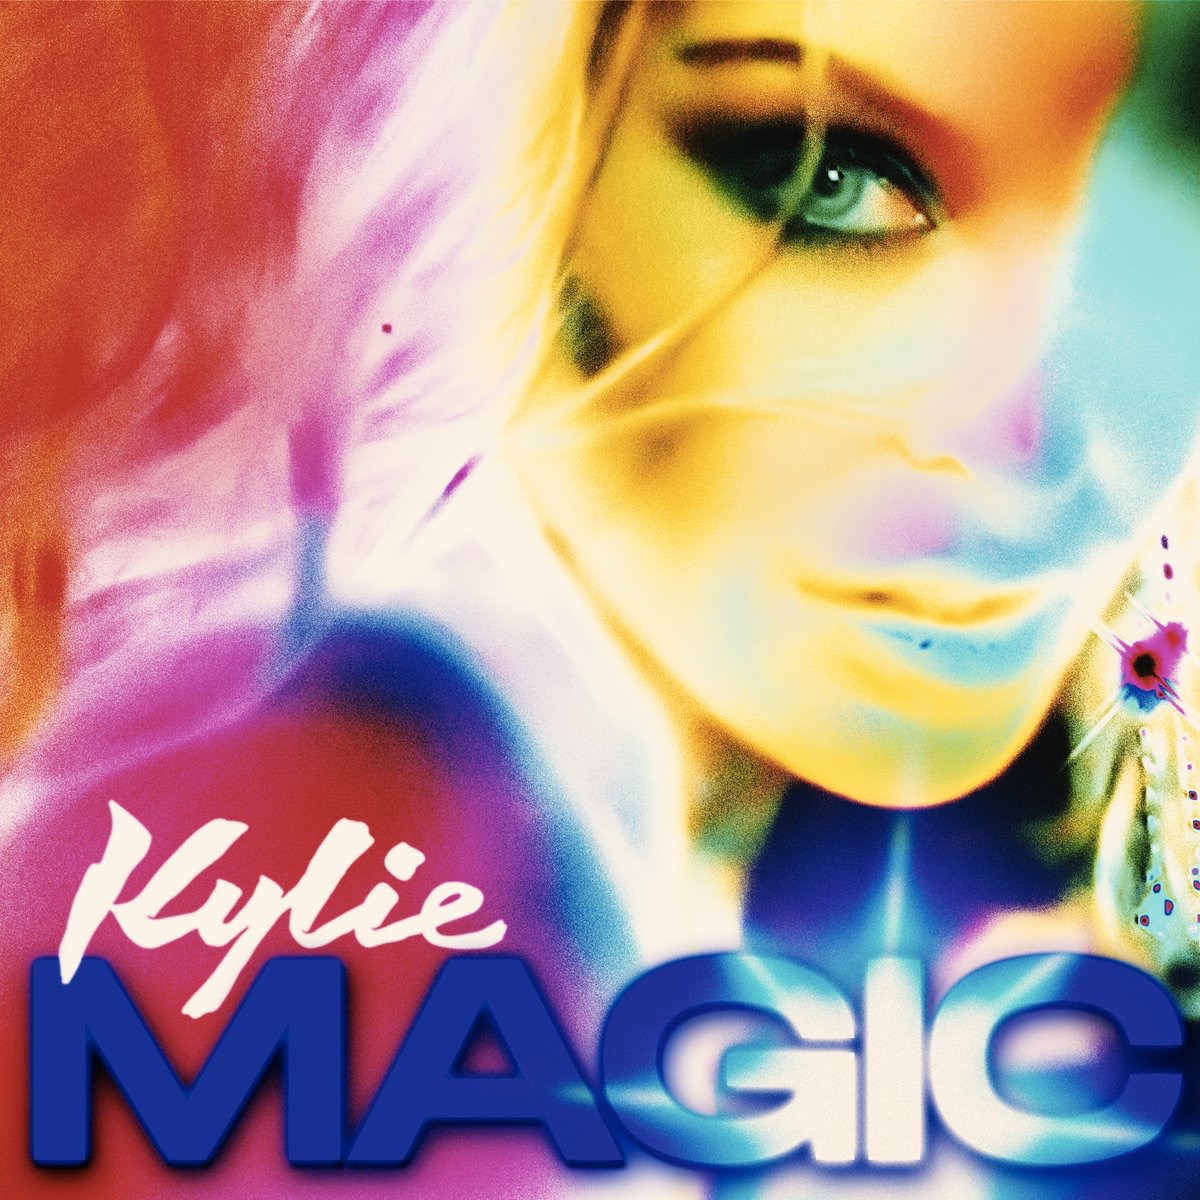 Kylie Minogue sort un nouveau single... Magic !